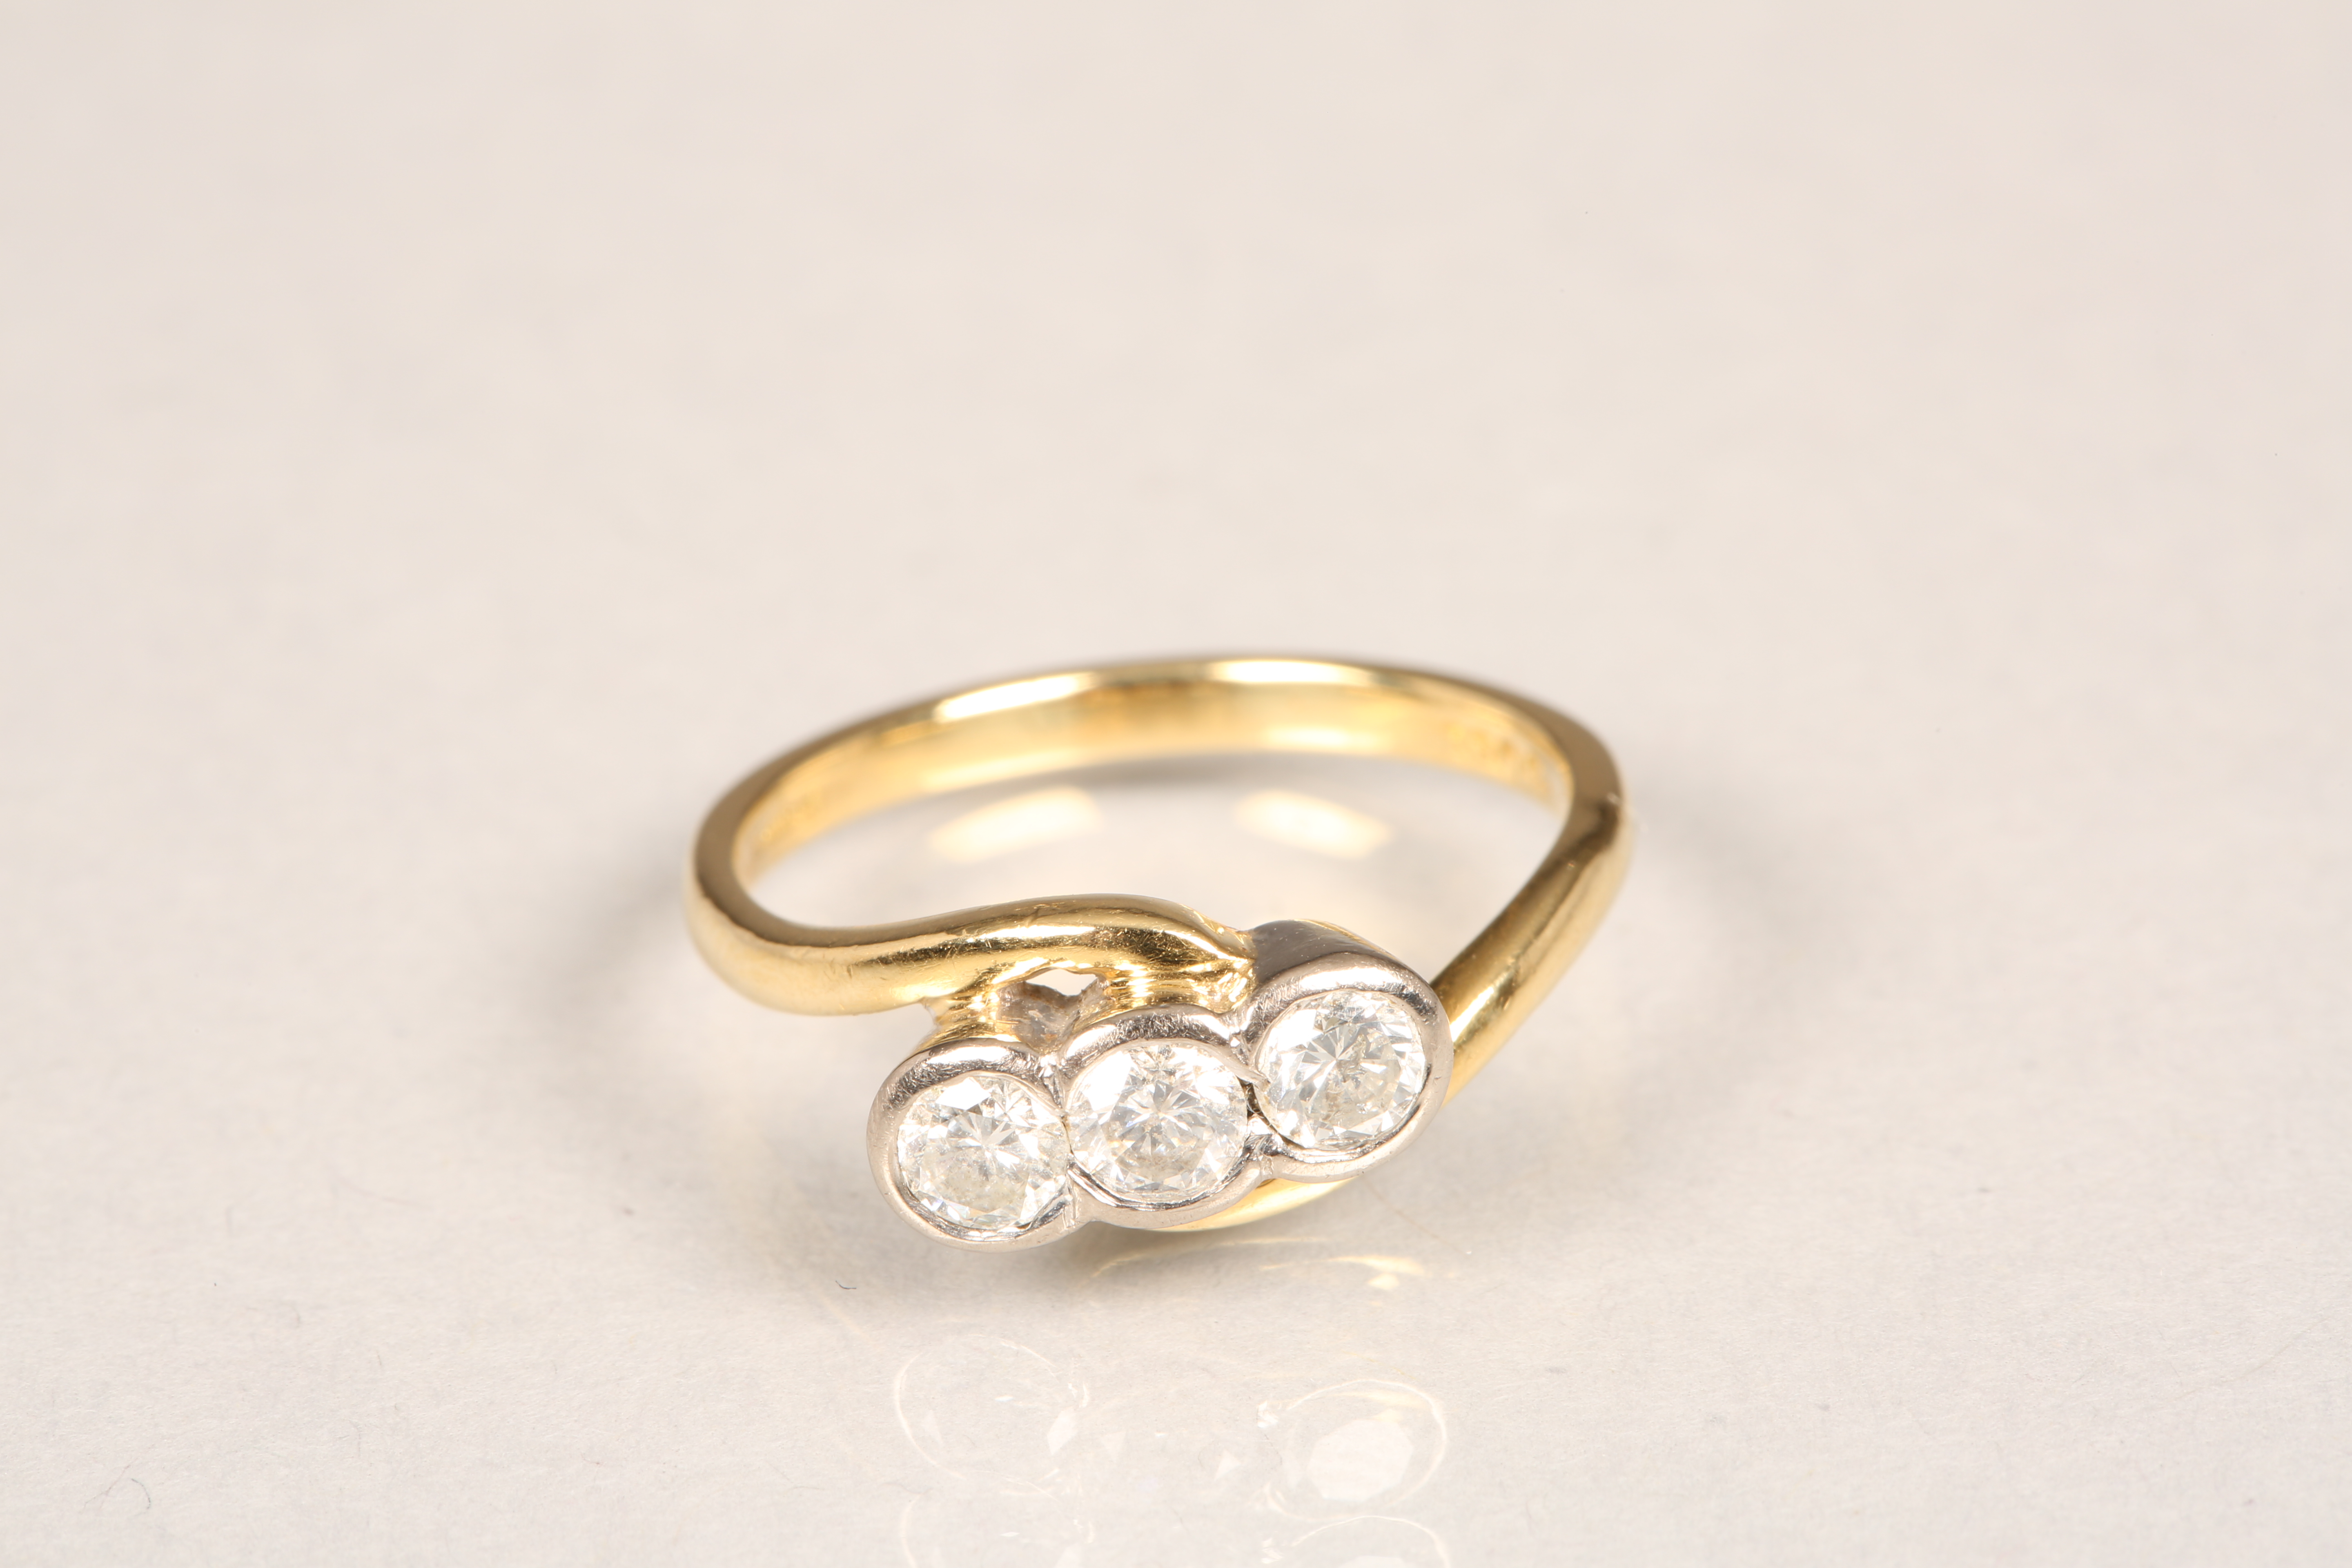 18 carat gold three stone diamond twist ring. Three brilliant cut 0.2 carat diamonds. Ring size N